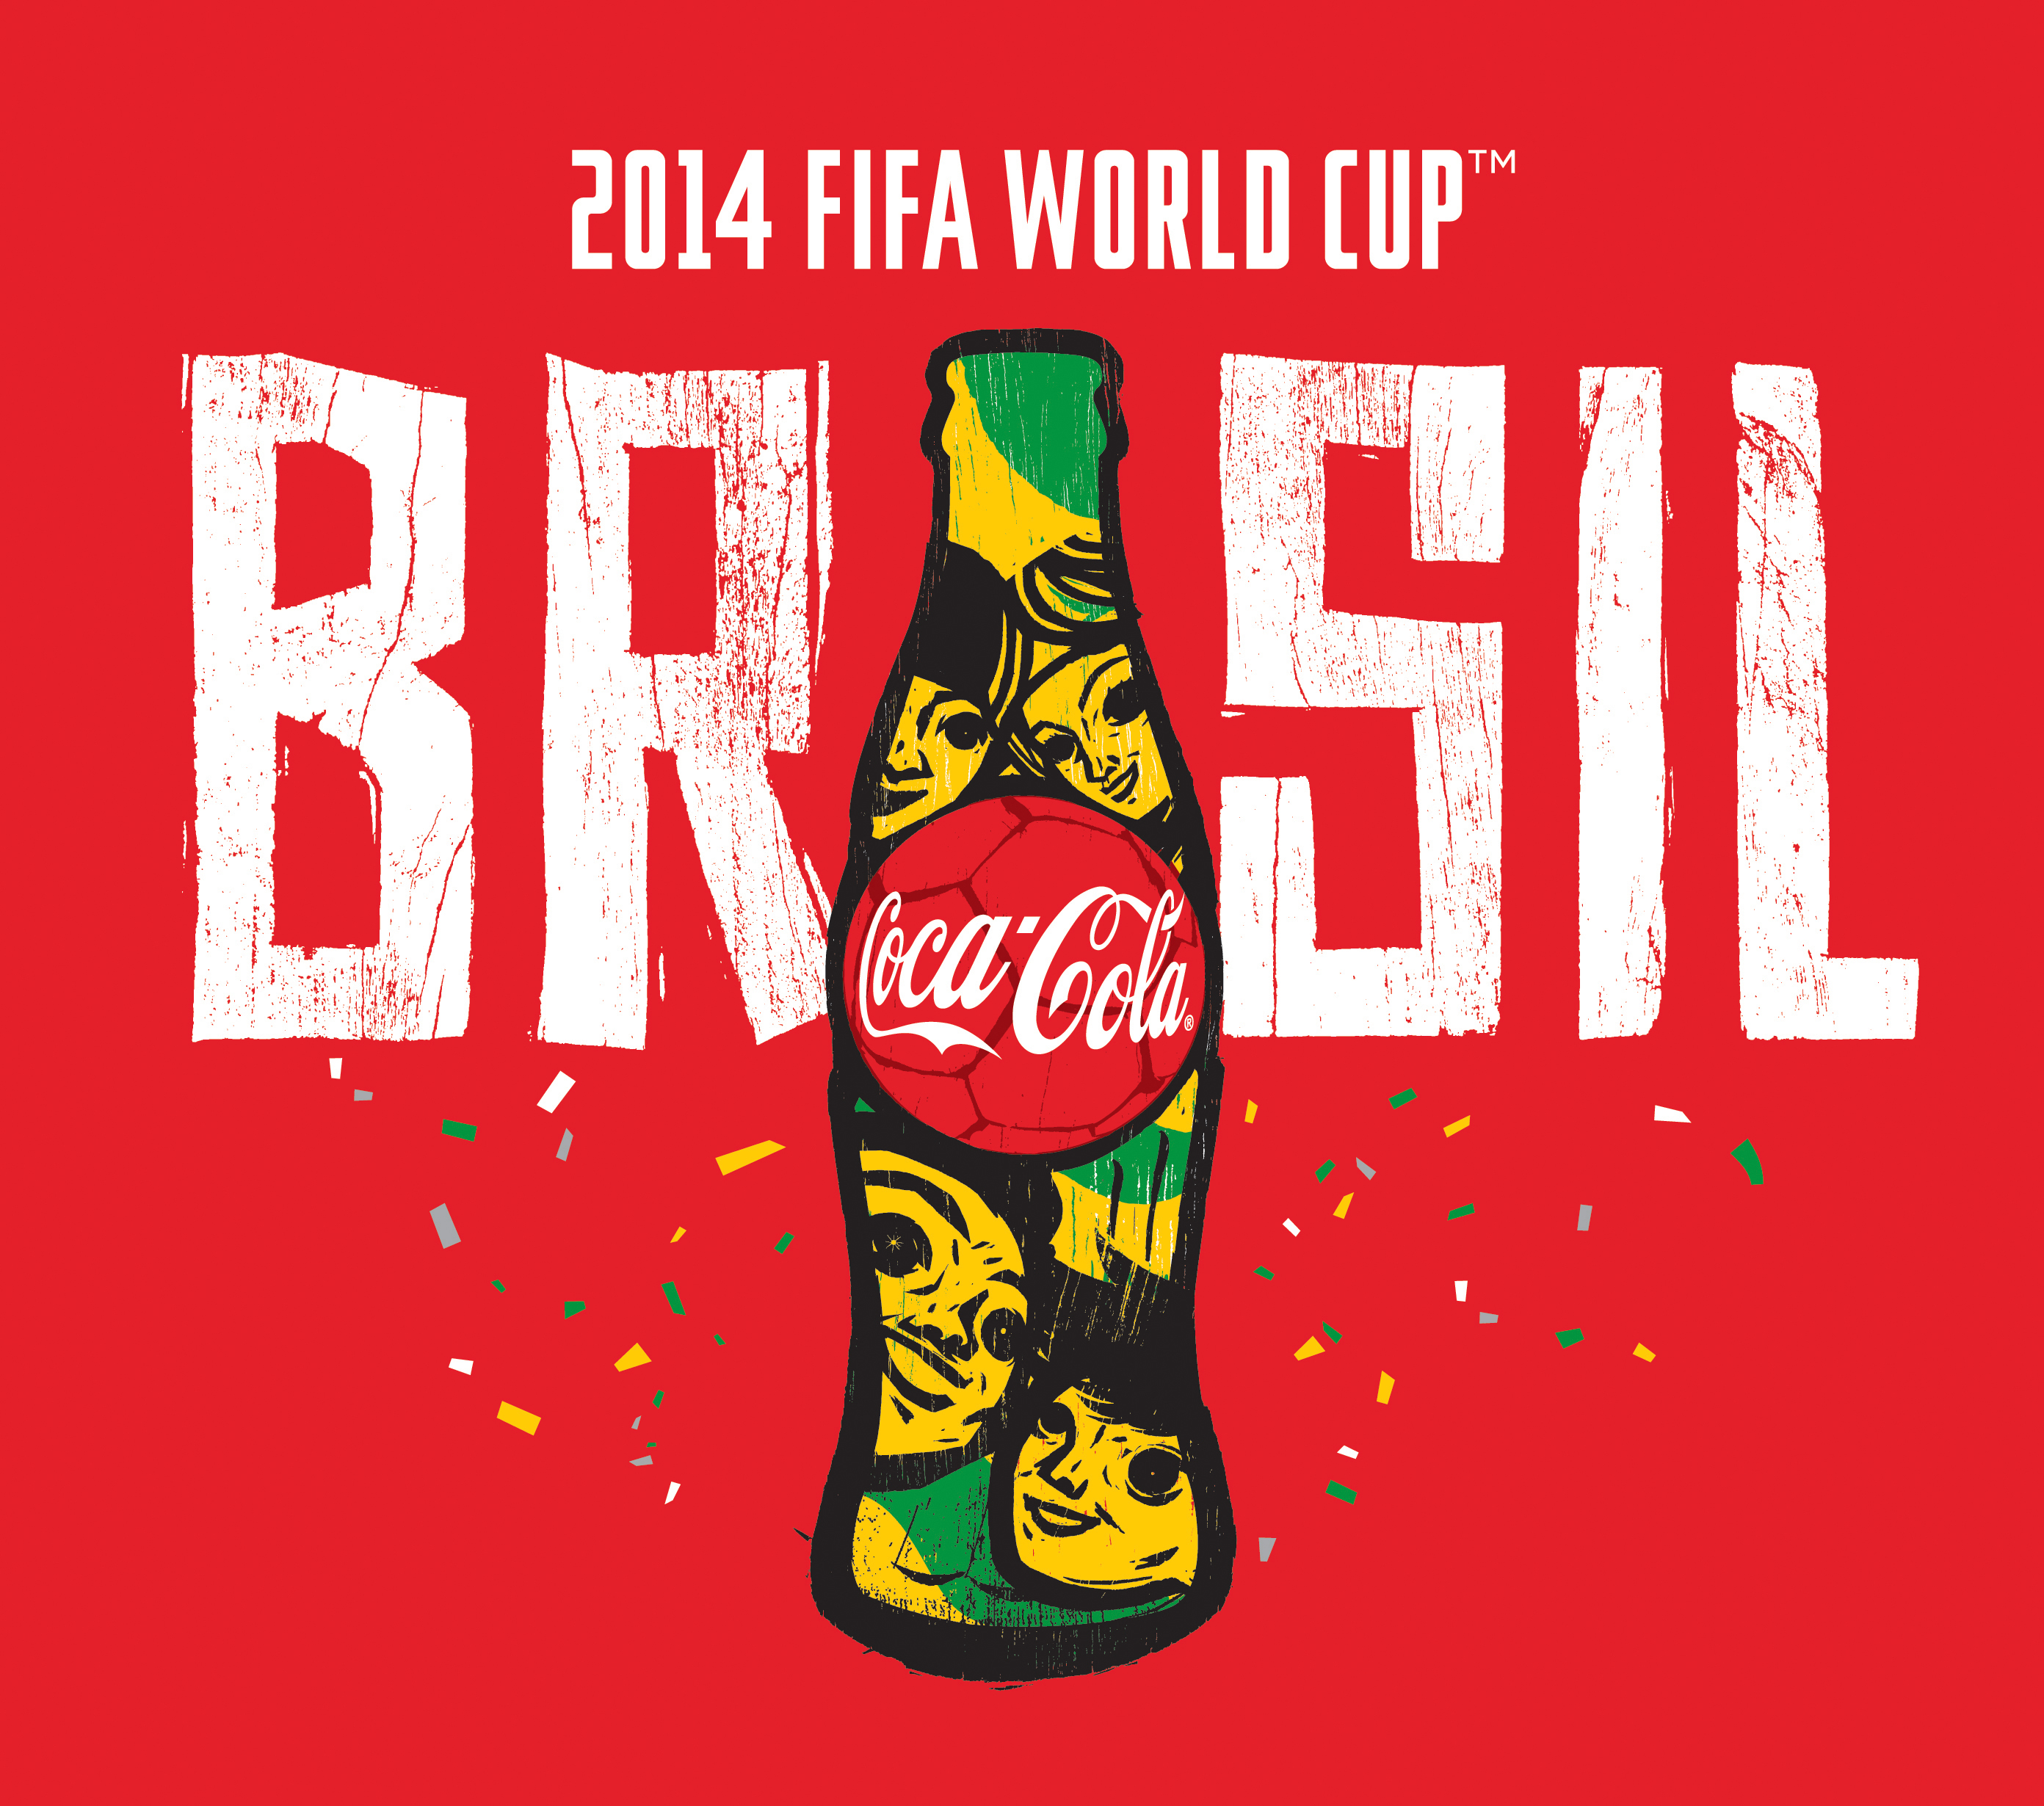 O ÚLTIMO FIFA da Copa do Mundo! FIFA World Cup 2014! 